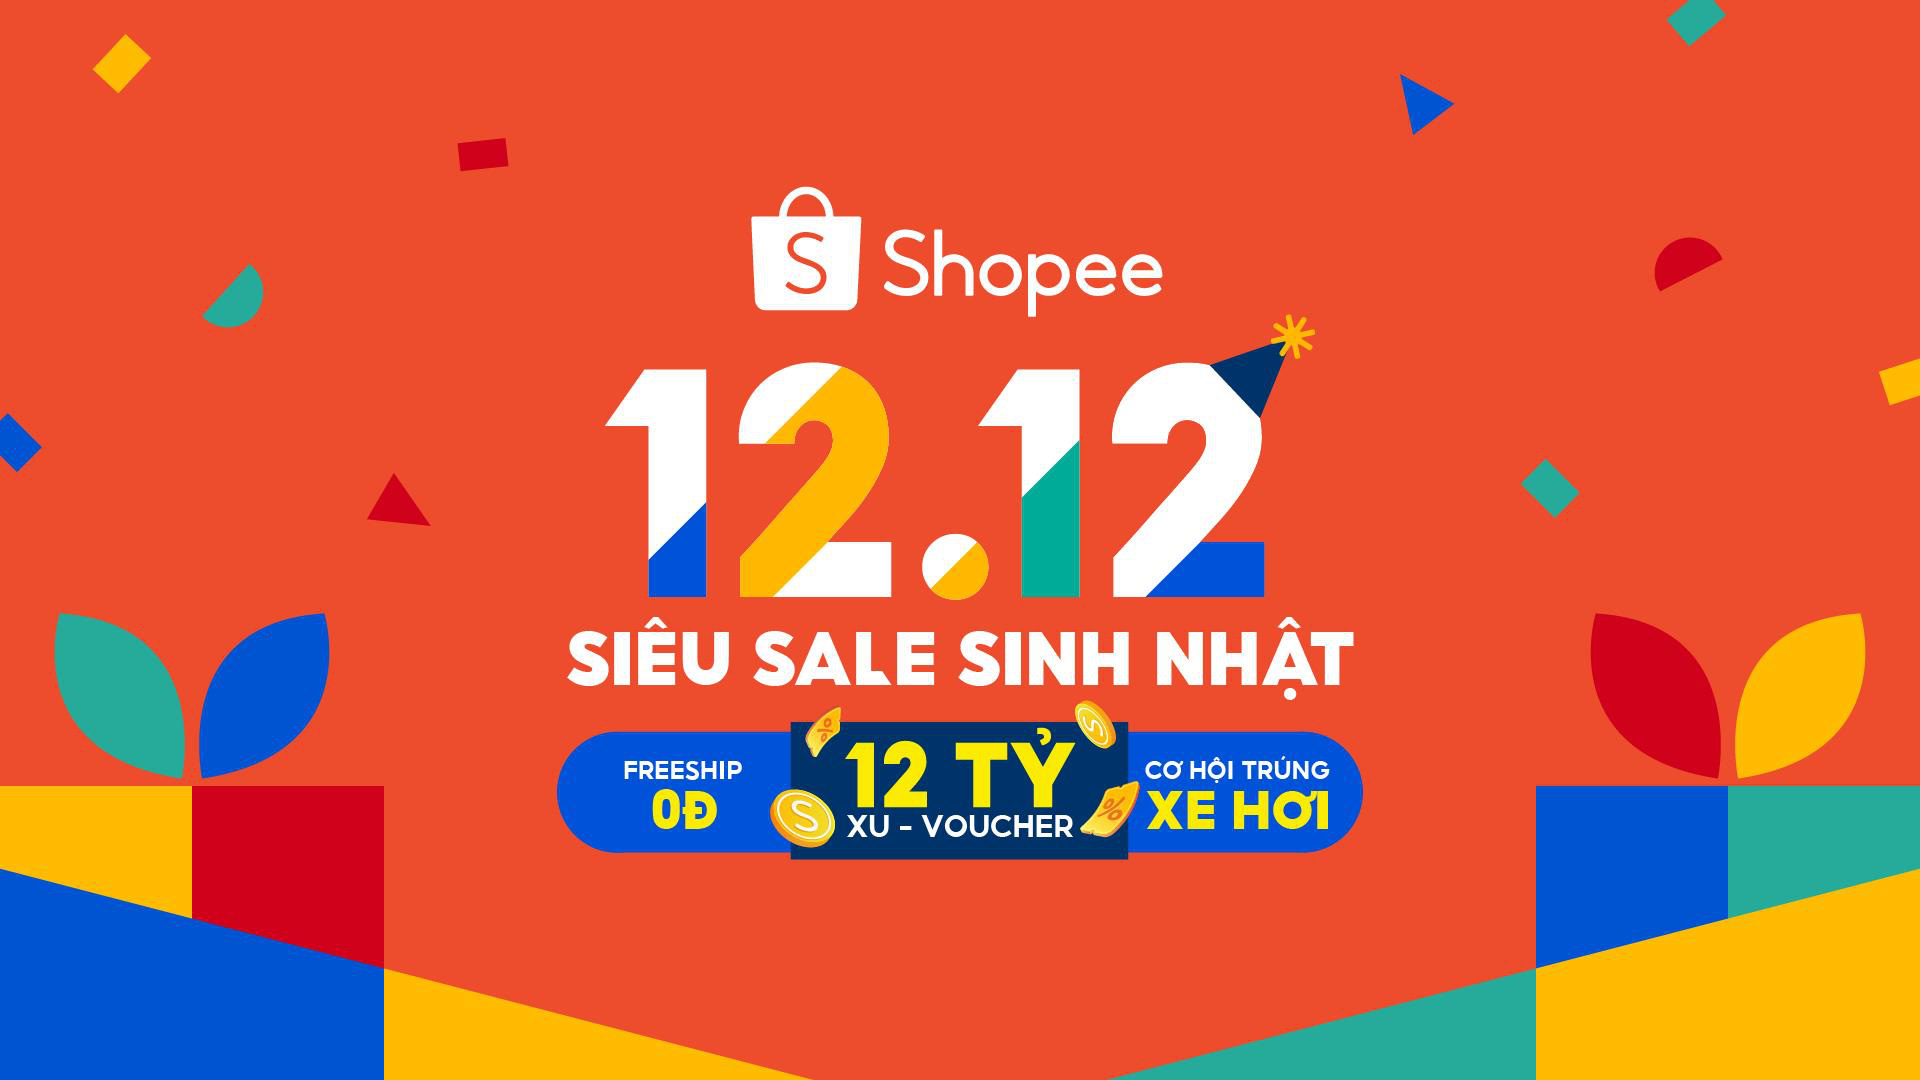 Người dùng tận hưởng đa dạng niềm vui mua sắm với Shopee 12.12 siêu sale sinh nhật - Ảnh 1.